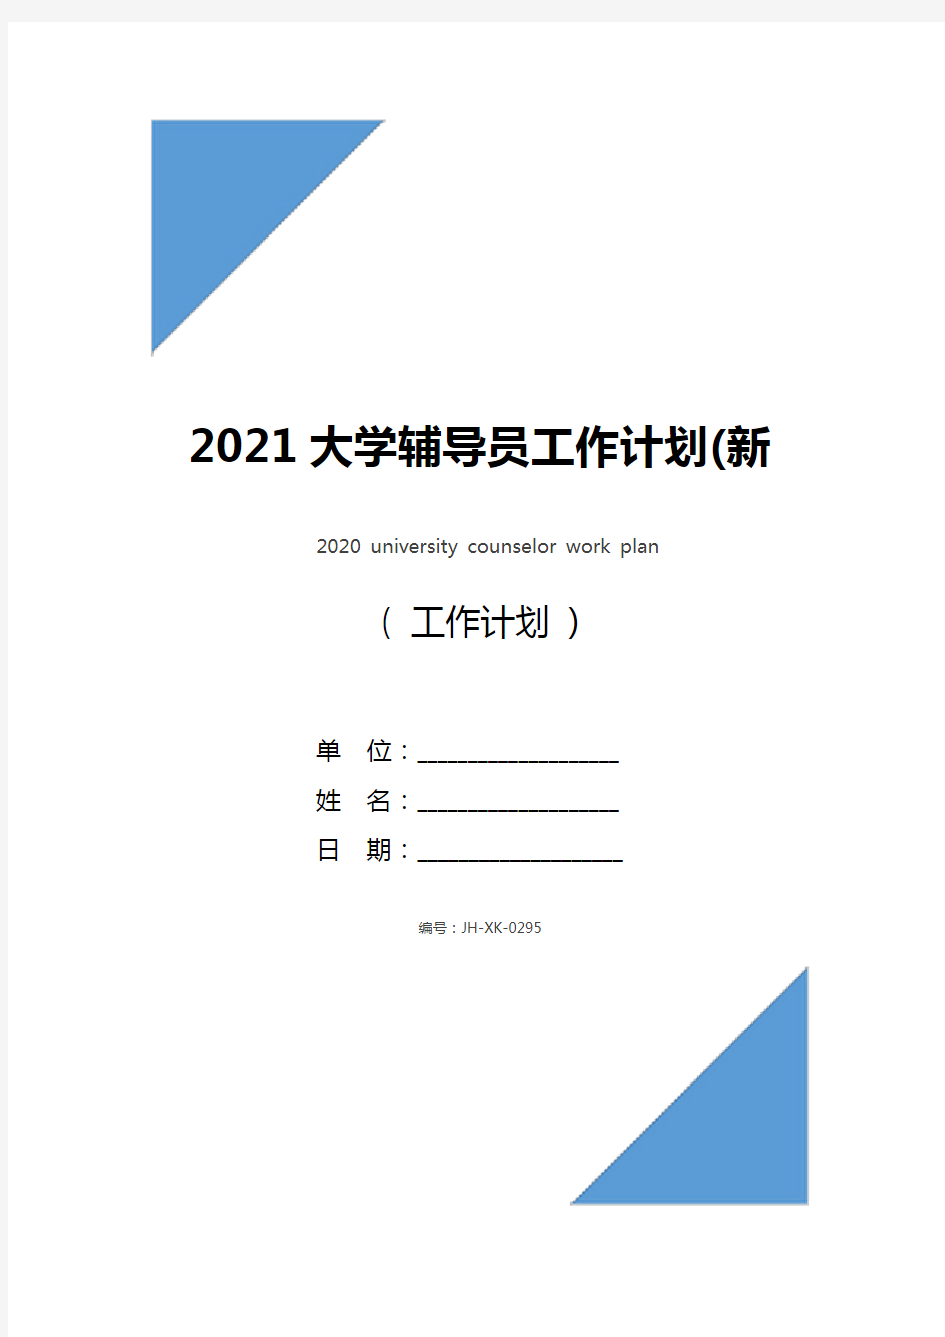 2021大学辅导员工作计划(新版)